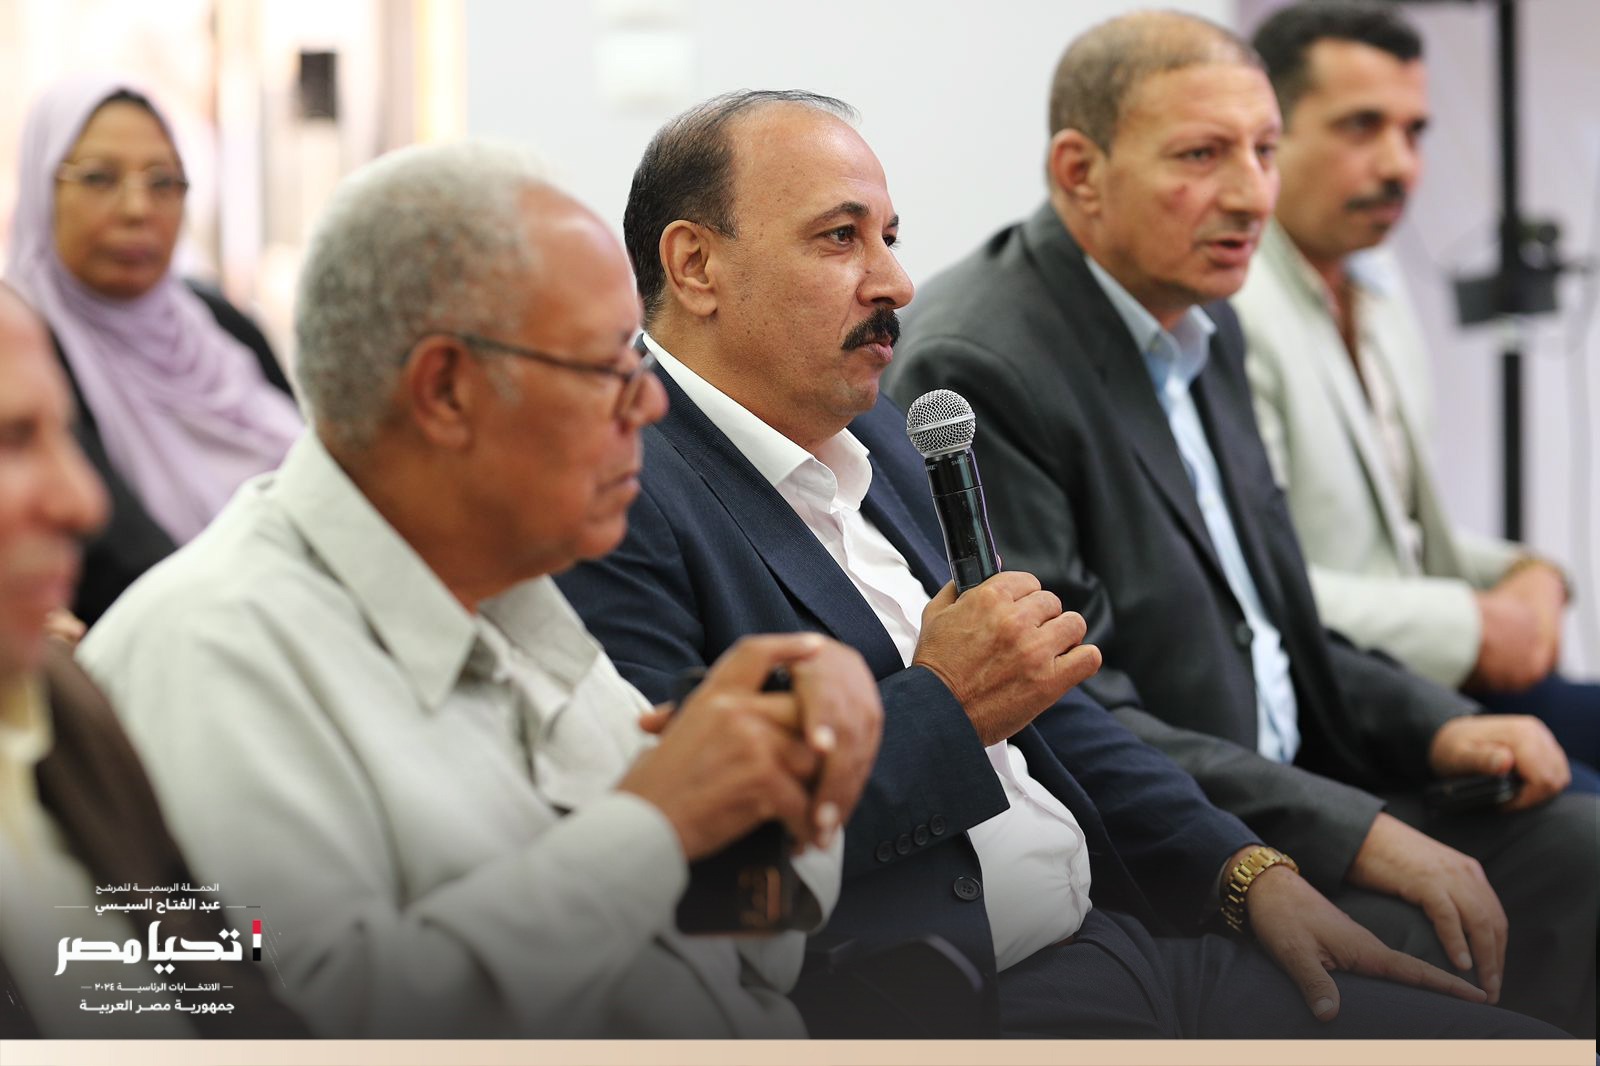 الرسمية للمرشح عبد الفتاح السيسي تستقبل وفد نقابة العاملين بالزراعة والري والصيد واستصلاح الأراضي (11)